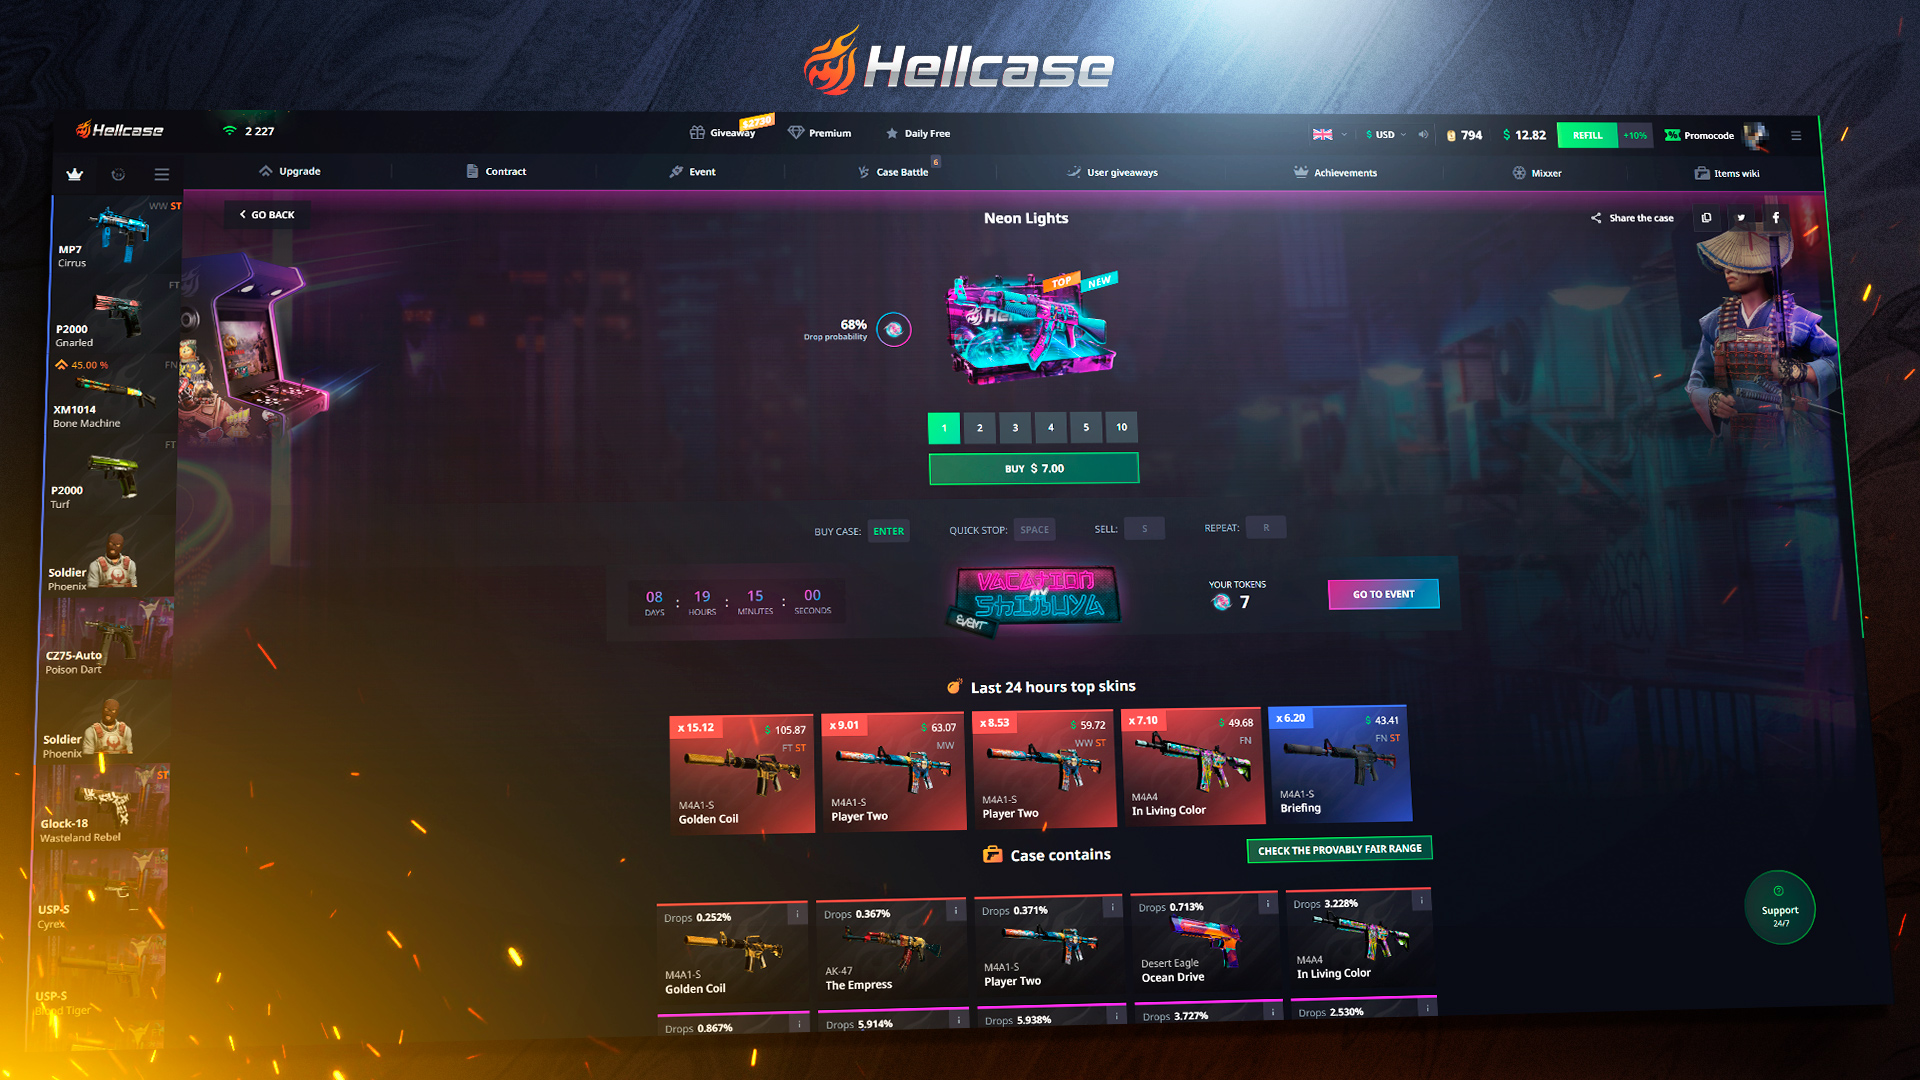 Hellcase.com 100 USD Wallet Card Code